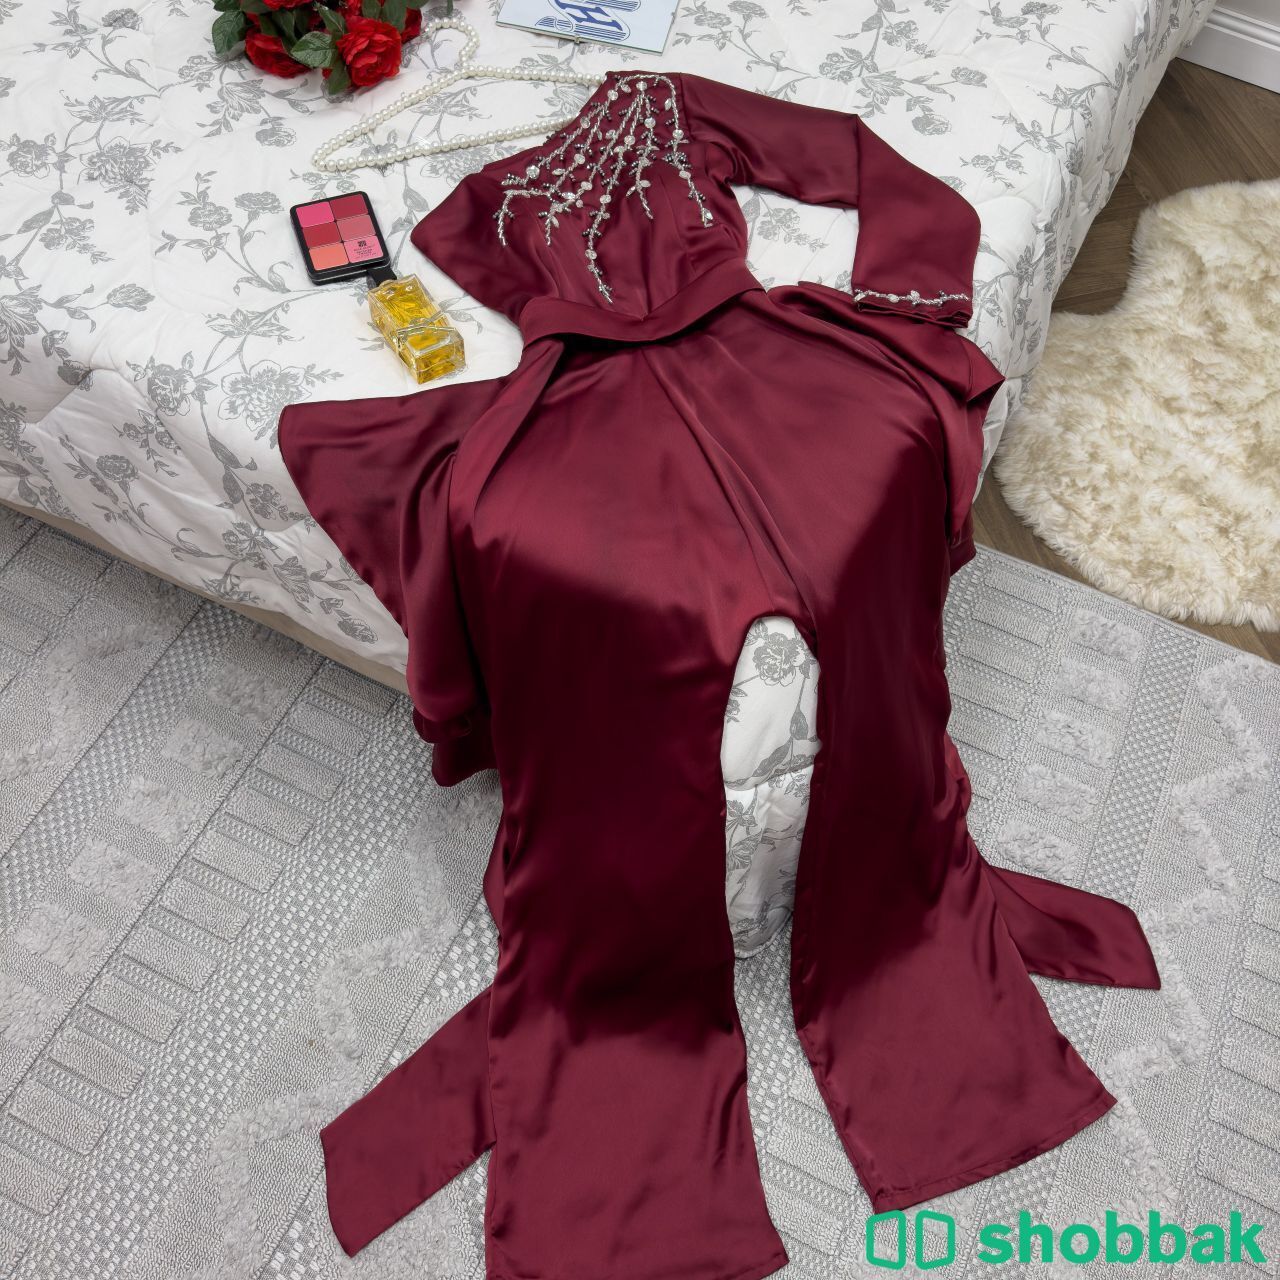 فستان سهره وملكه انيقه مميزه Shobbak Saudi Arabia